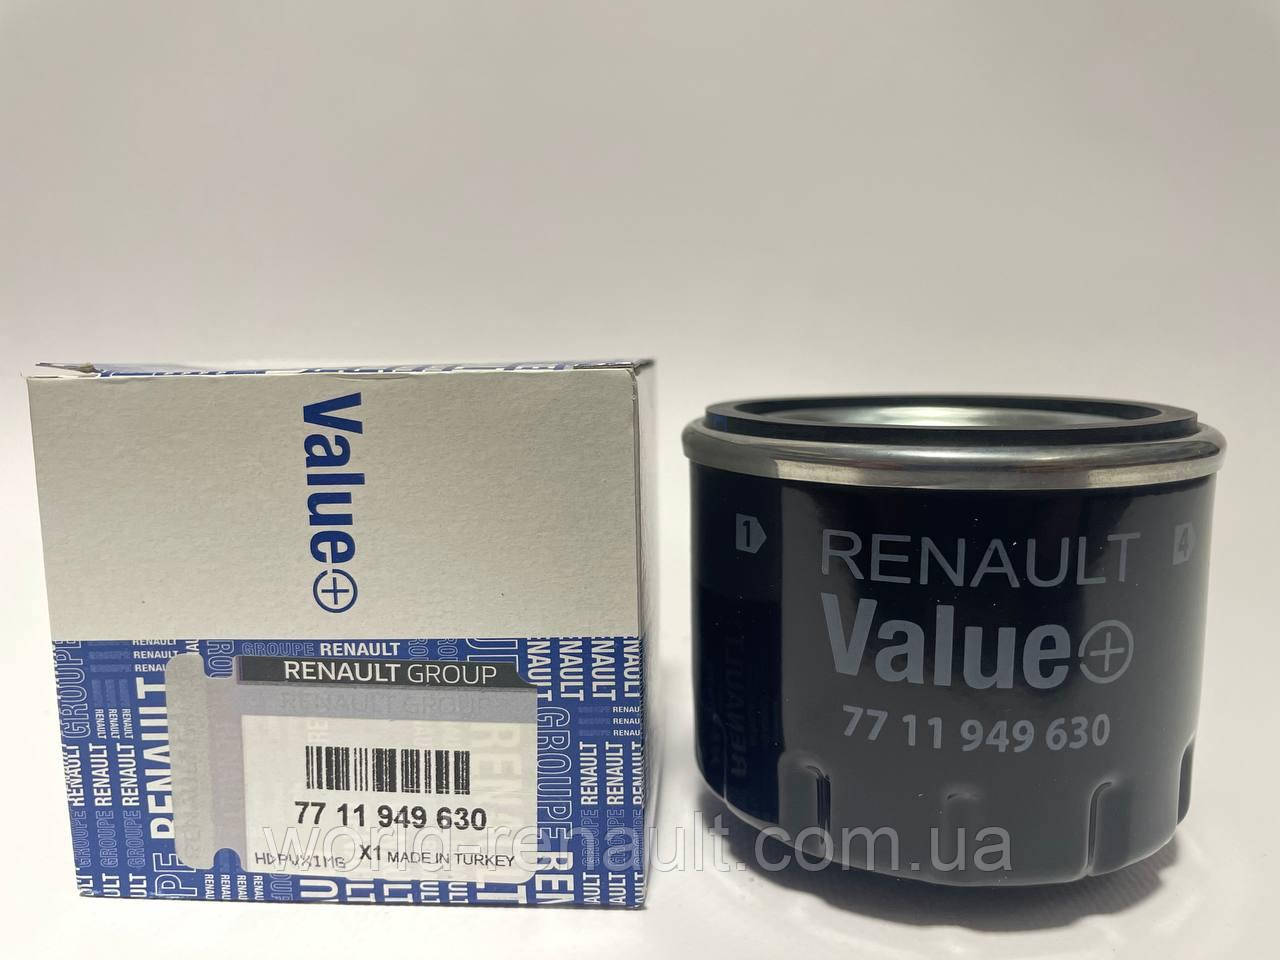 Value+ (Renault) 7711949630 — Оливний фільтр на Рено Кангу 2 1.5dci K9K